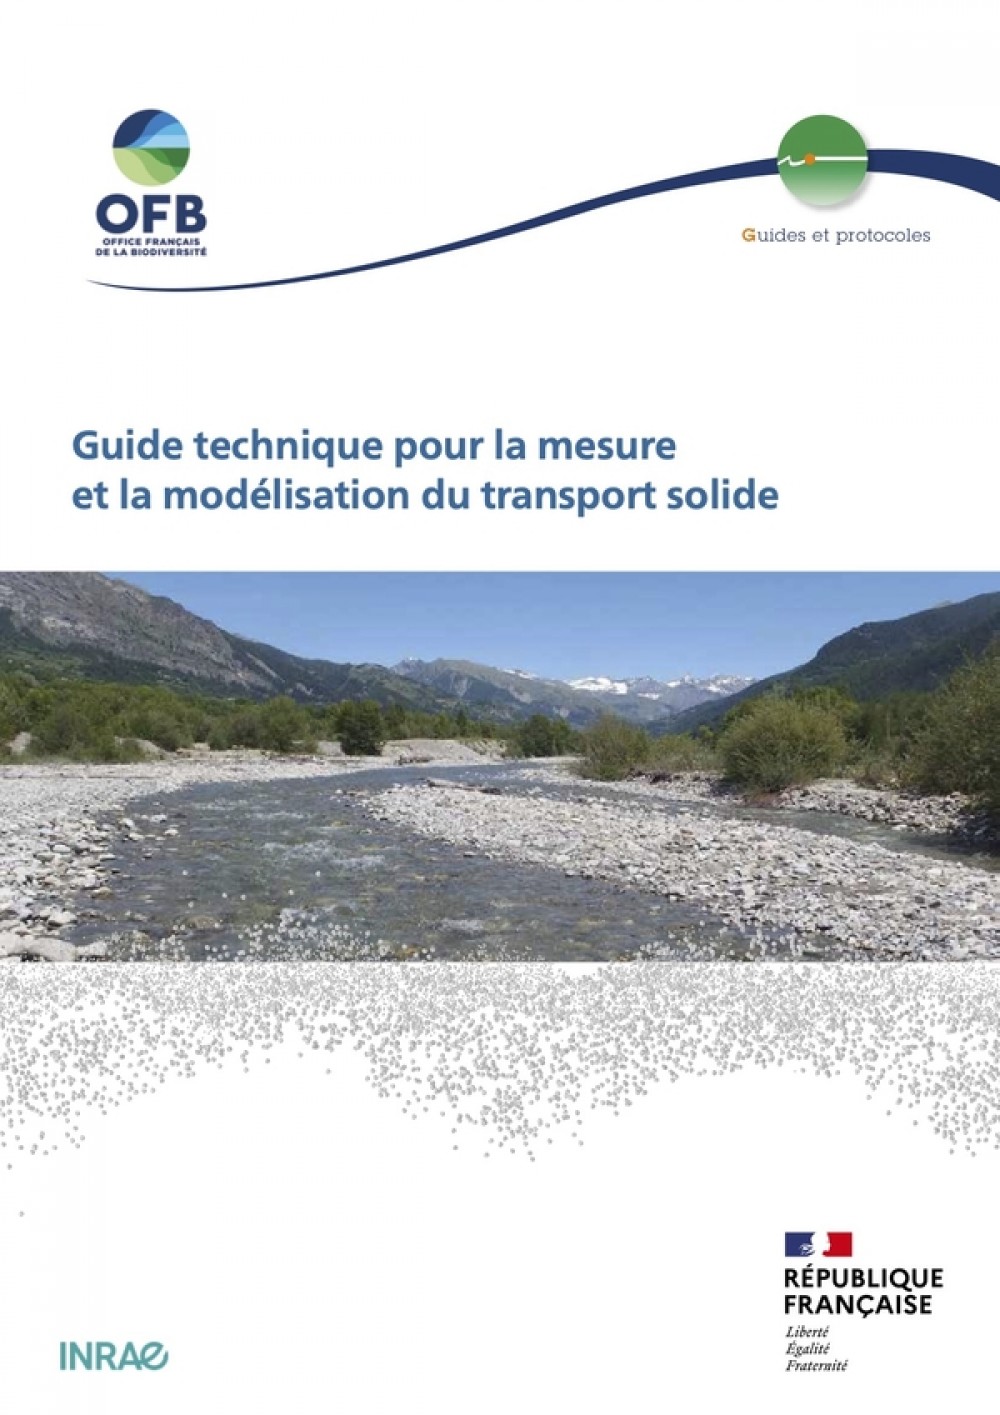 [Publication] Guide technique pour la mesure et la modélisation du transport solide - Le portail technique de l'OFB